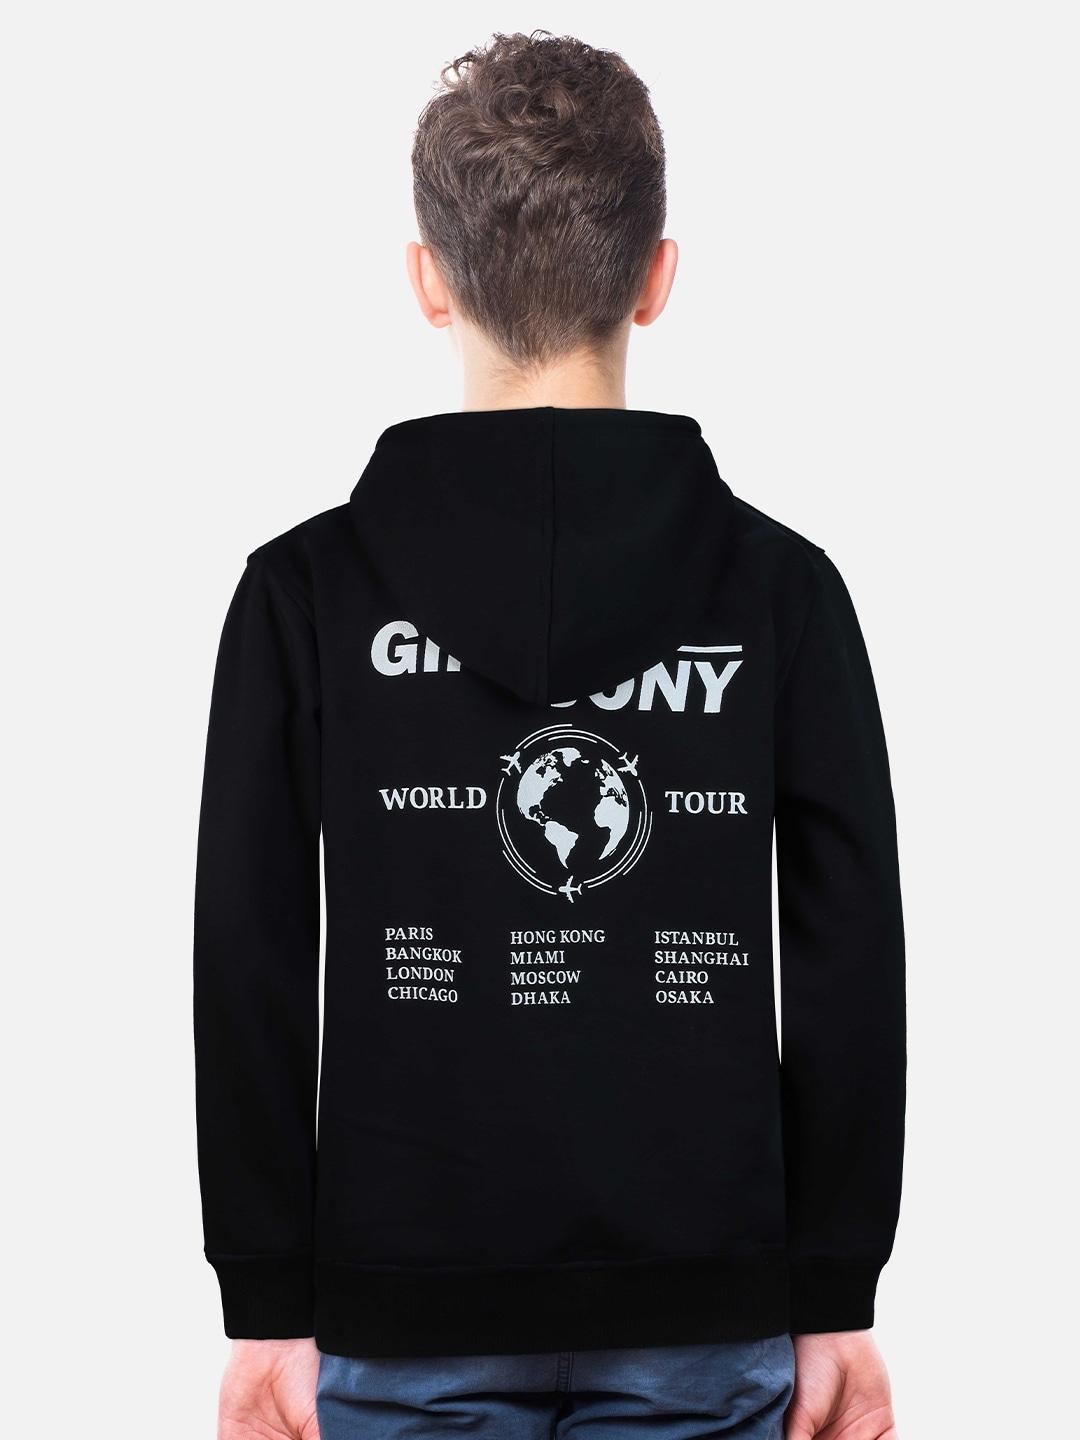 Gini and Jony Boys Typography Printed Hooded Cotton Sweatshirt